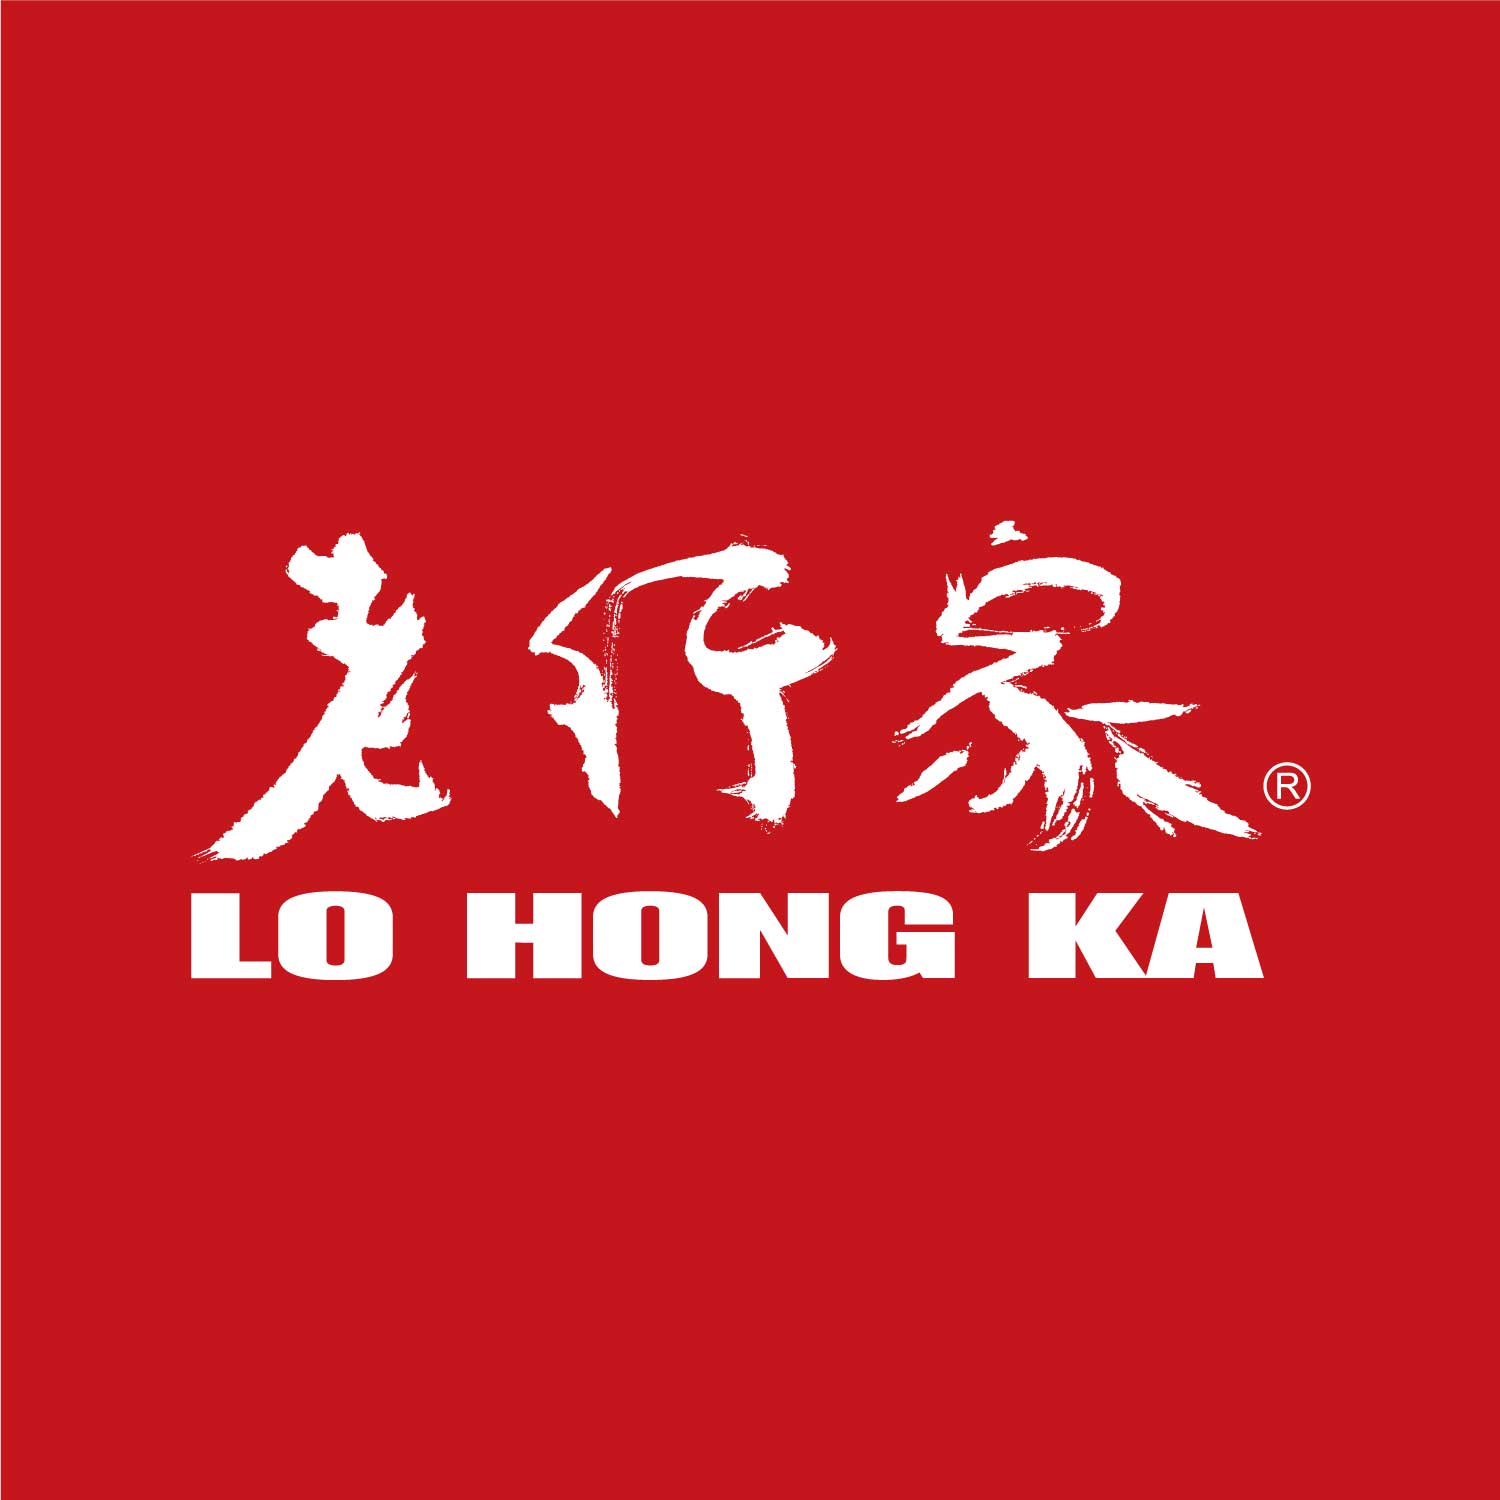 Lo Hong Ka (LG 2.79 PY)